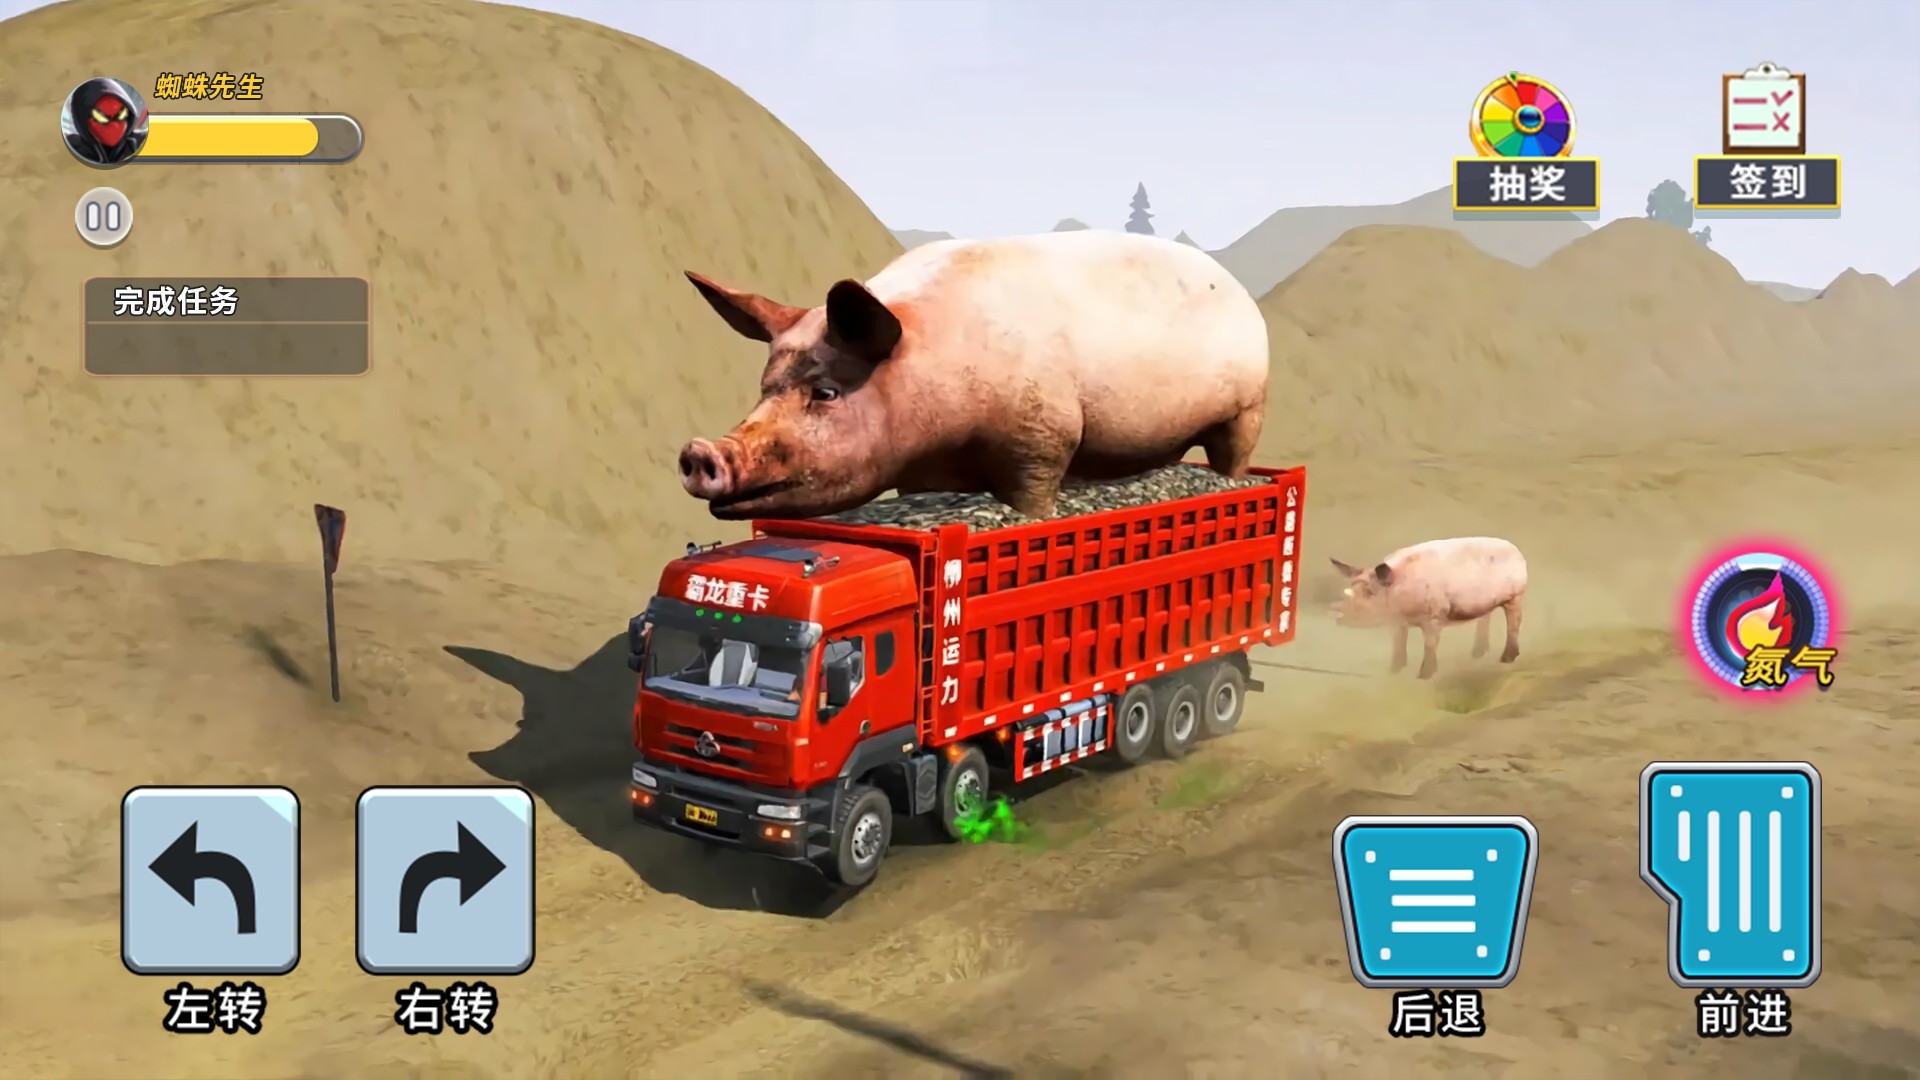 泥头卡车模拟器游戏下载手机版 v1.0